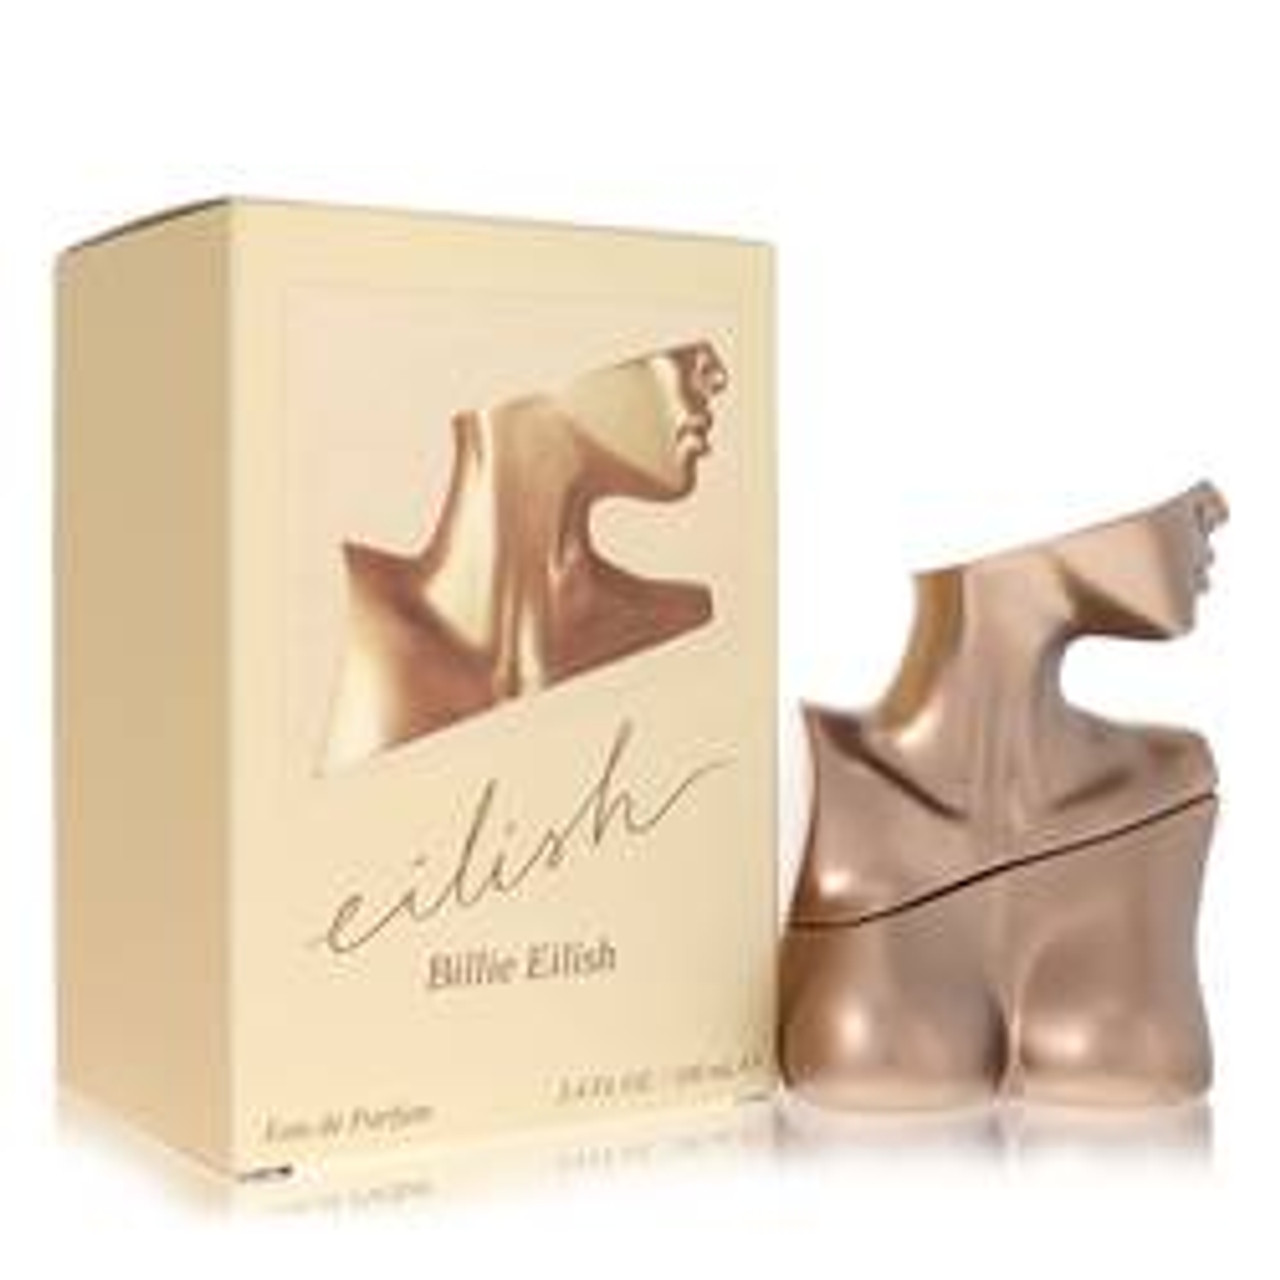 Eilish Perfume By Billie Eilish Eau De Parfum Spray 3.4 oz for Women - *Pre-Order